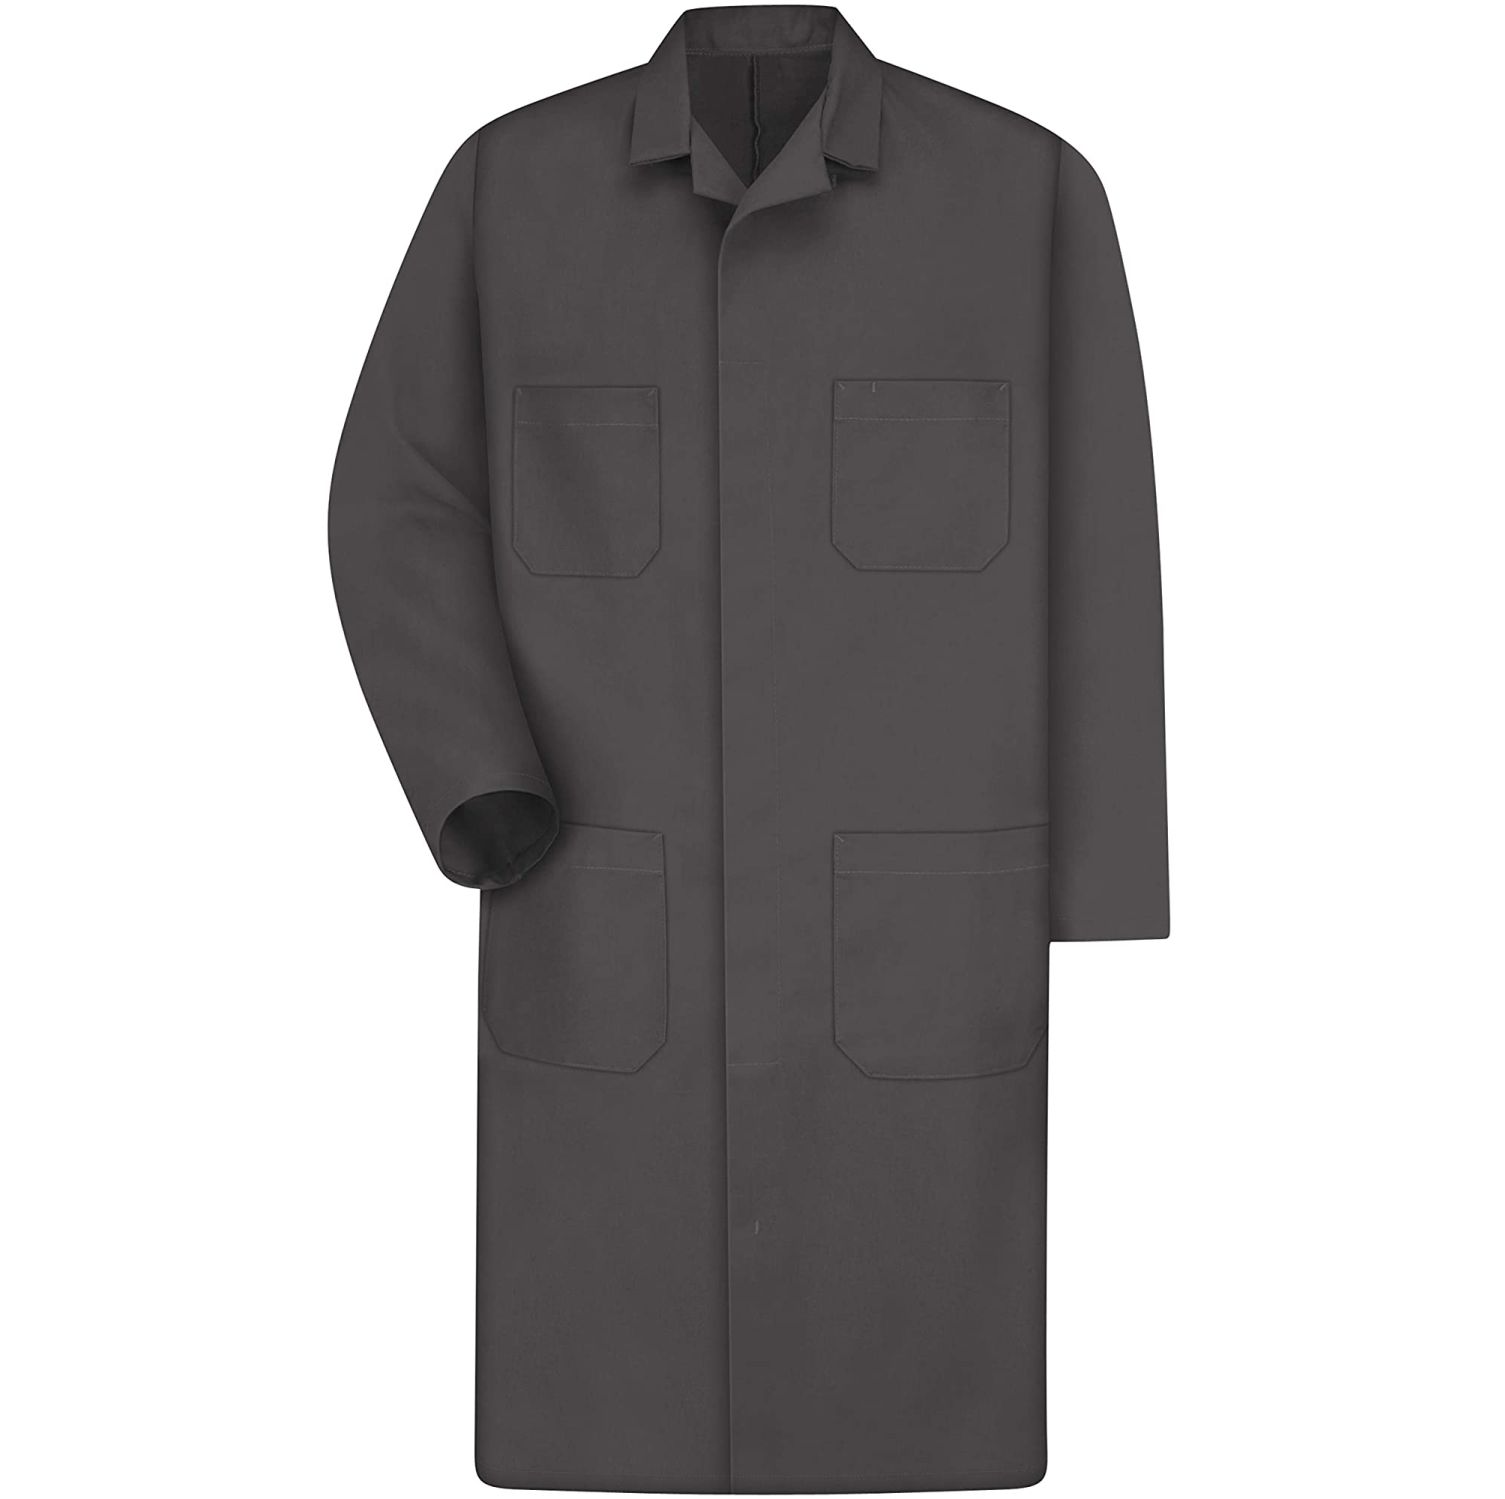 Premium Uniforms Poly/Cotton Shop Coat #S810 Charcoal